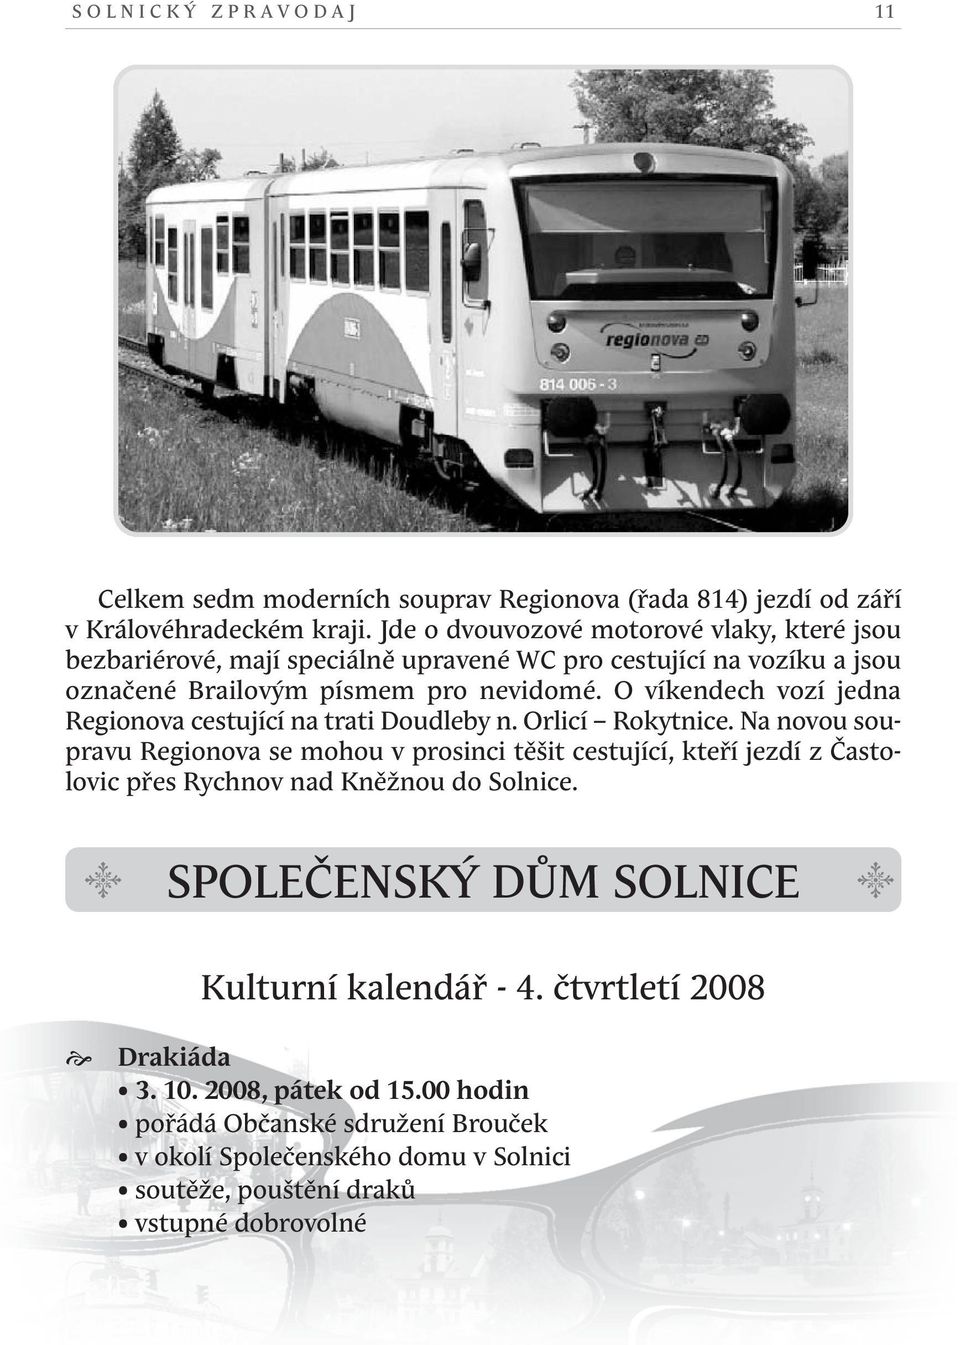 o víkendech vozí jedna Regionova cestující na trati doudleby n. orlicí Rokytnice.